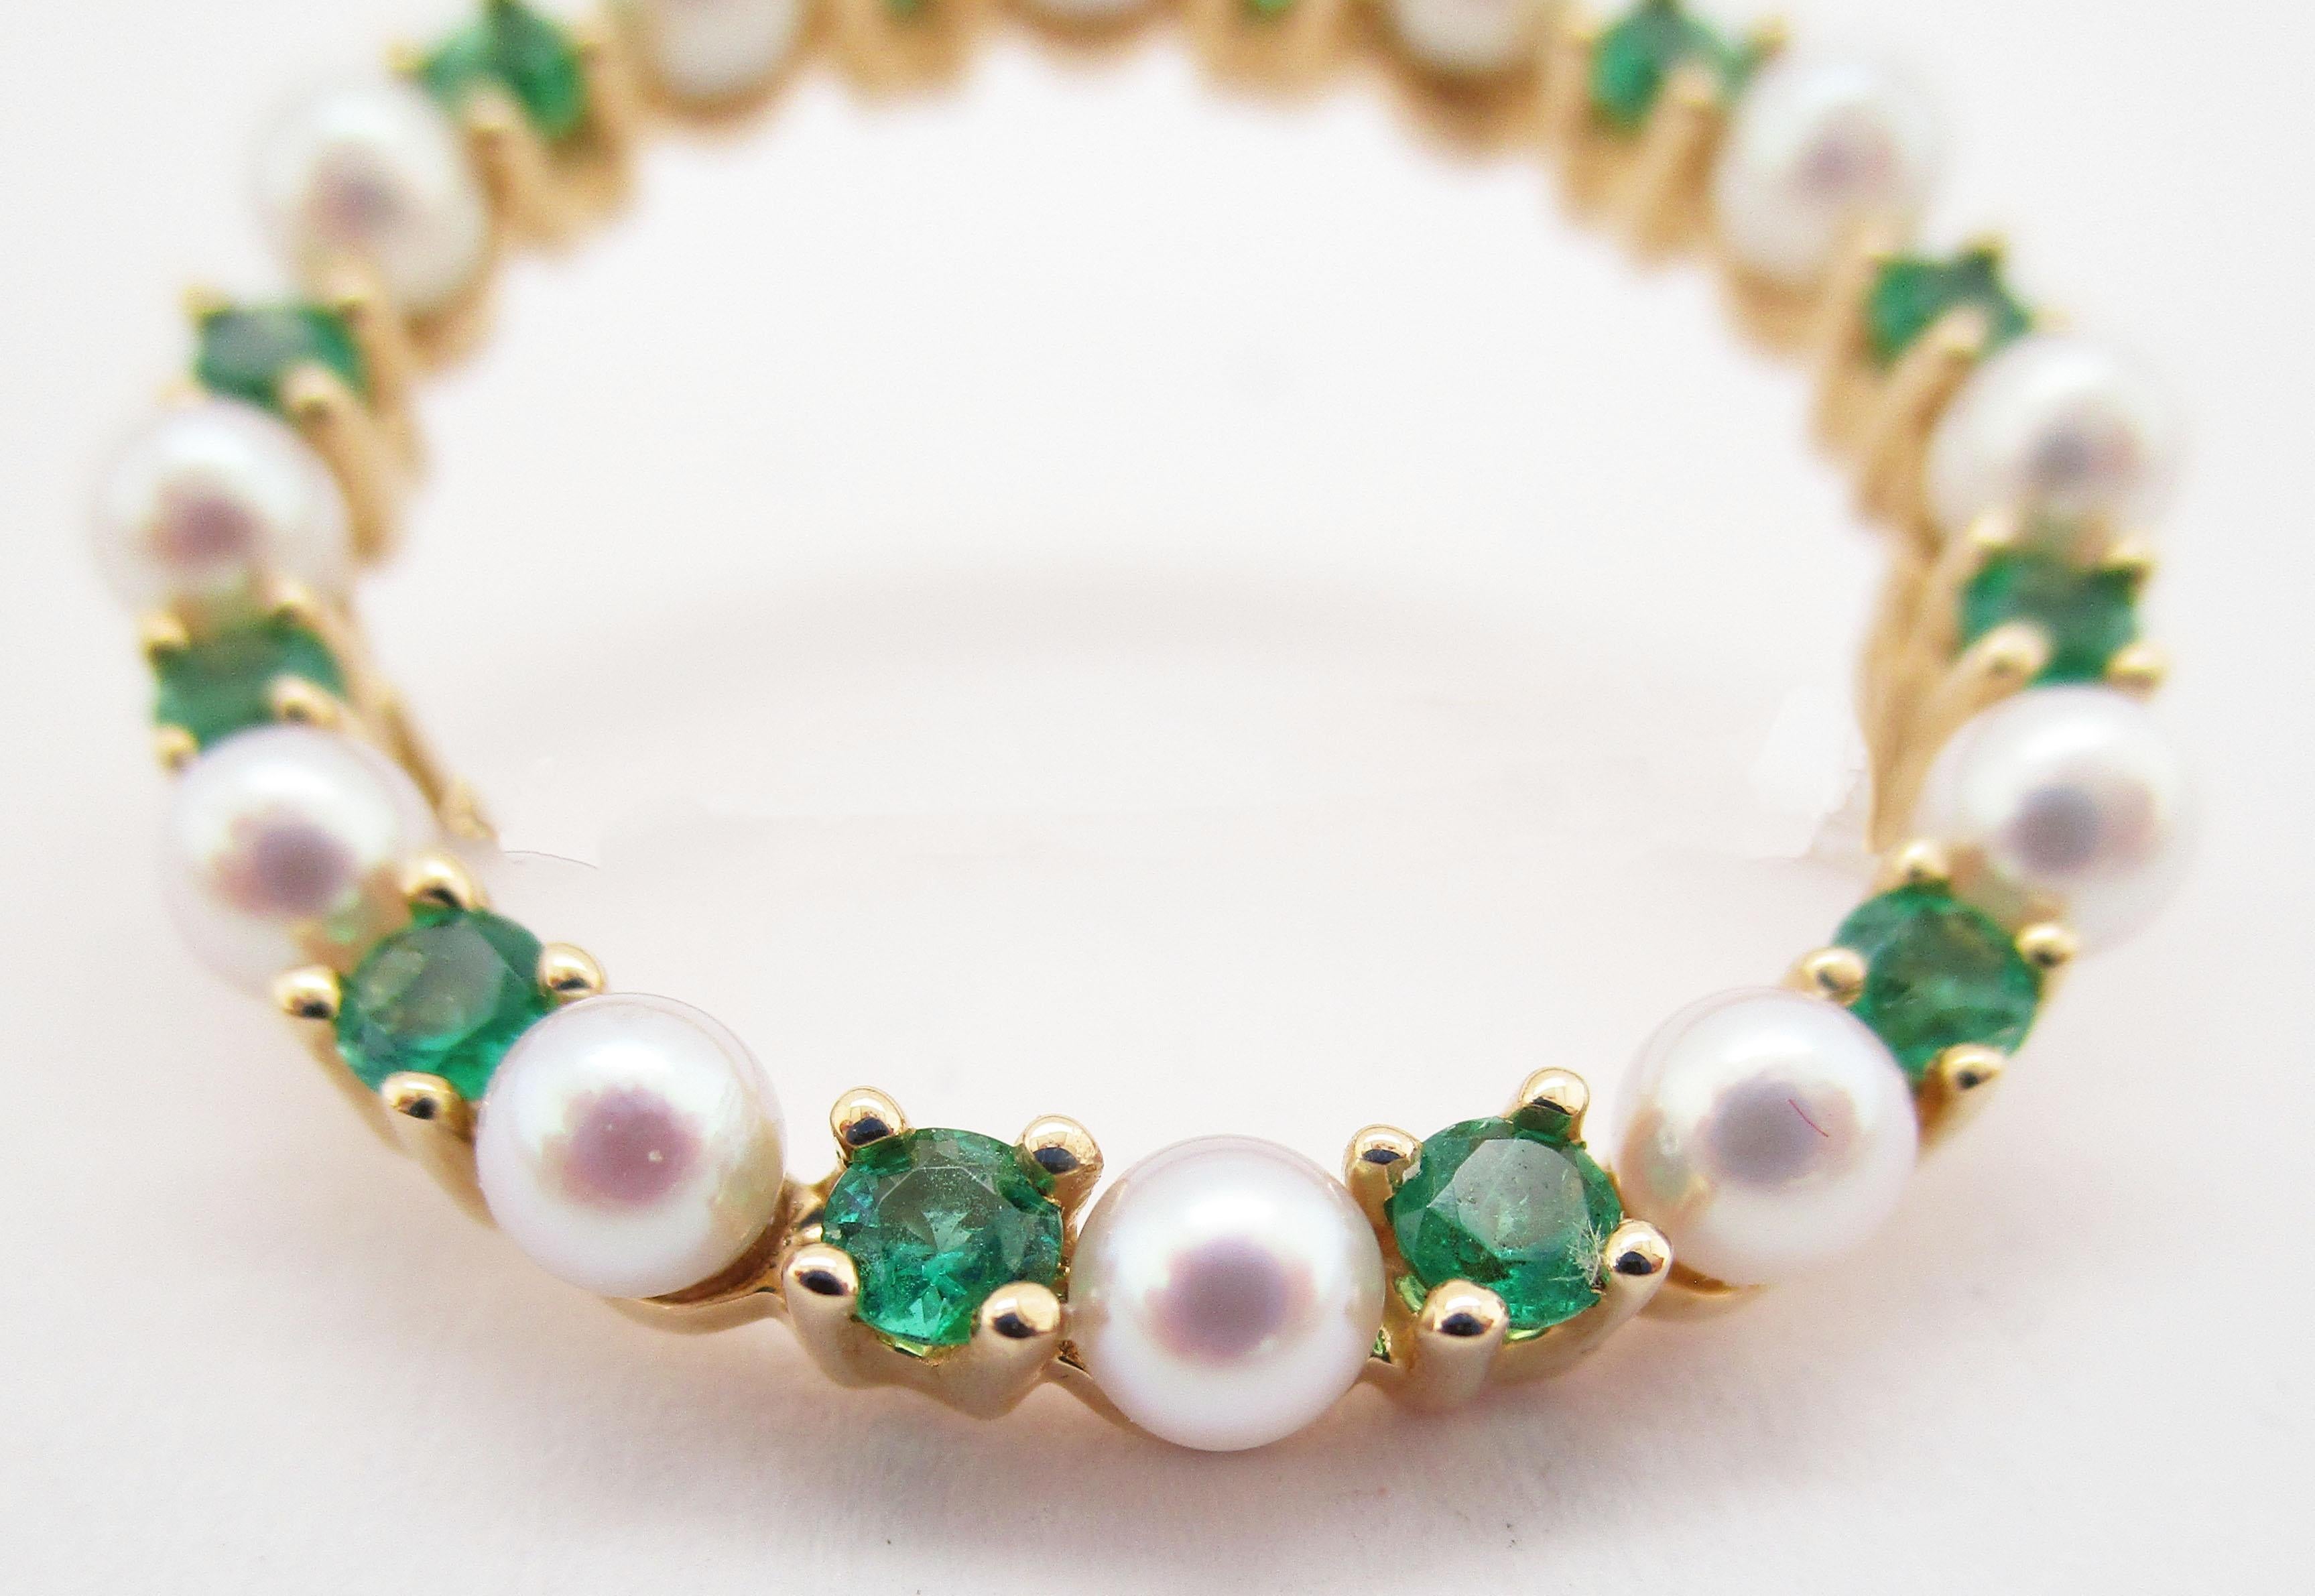 Dies ist eine absolut schöne Mitte des Jahrhunderts Kreis Pin mit einer herrlichen Reihe von Perlen und Smaragden in 14k Gelbgold gesetzt. Die Perlen sind atemberaubend, wie schimmernde runde Silberspiegel! Der Glanz der Perlen ist der perfekte